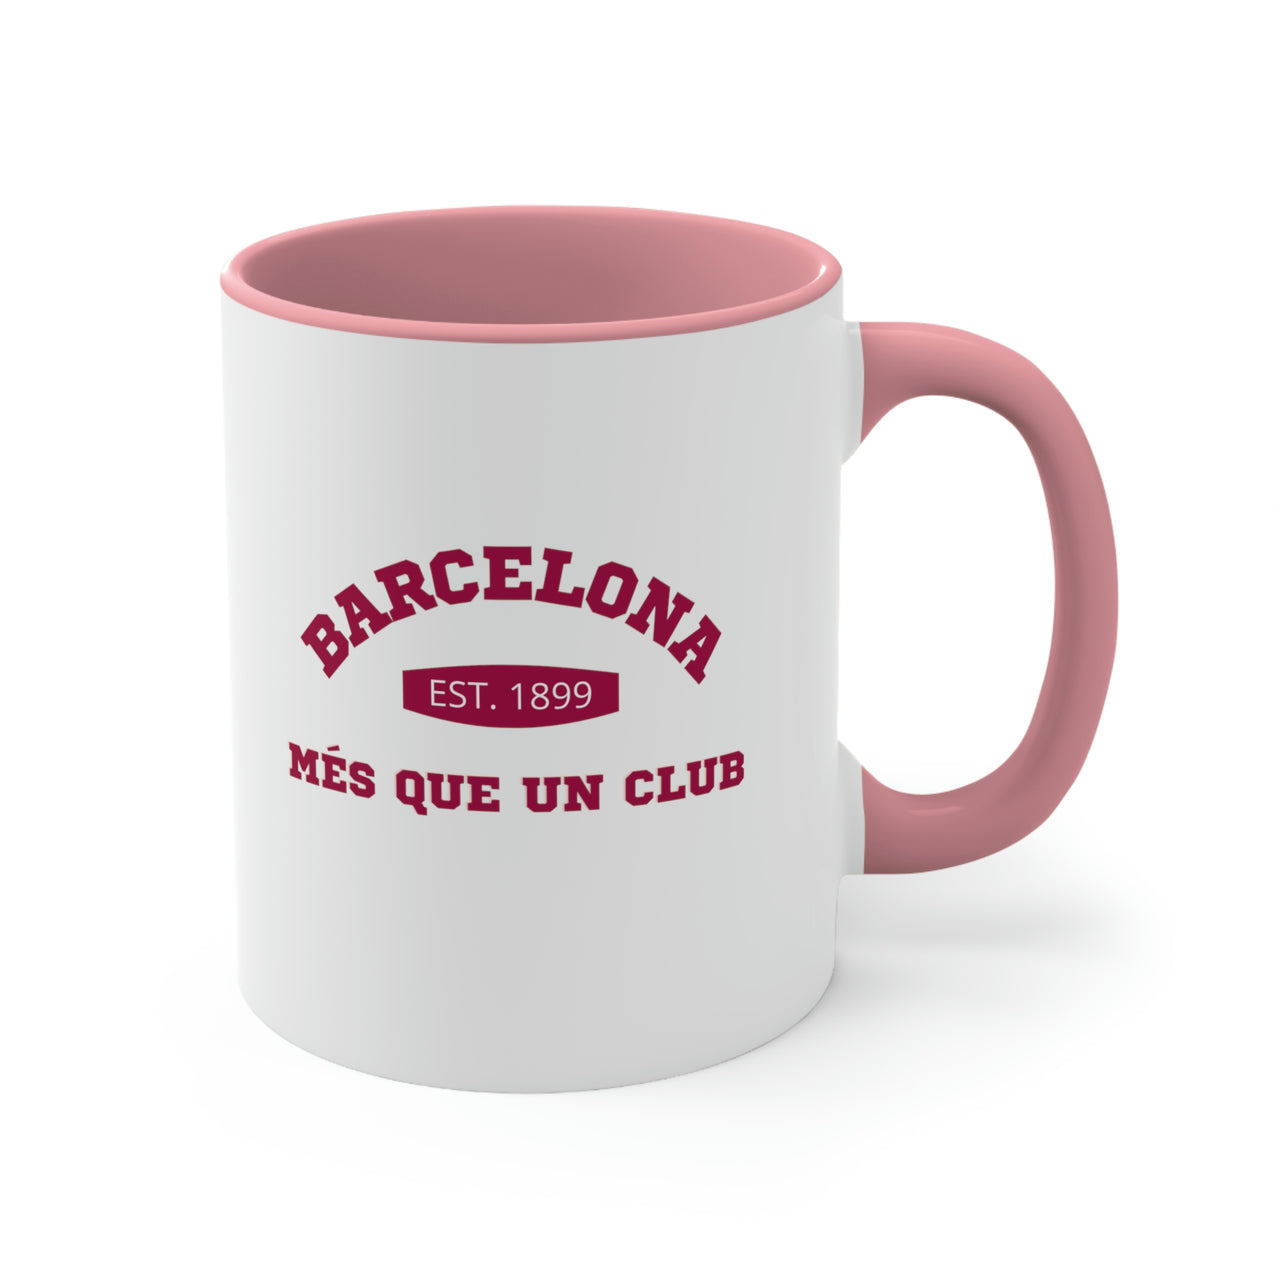 Barcelona Coffee Mug, 11oz